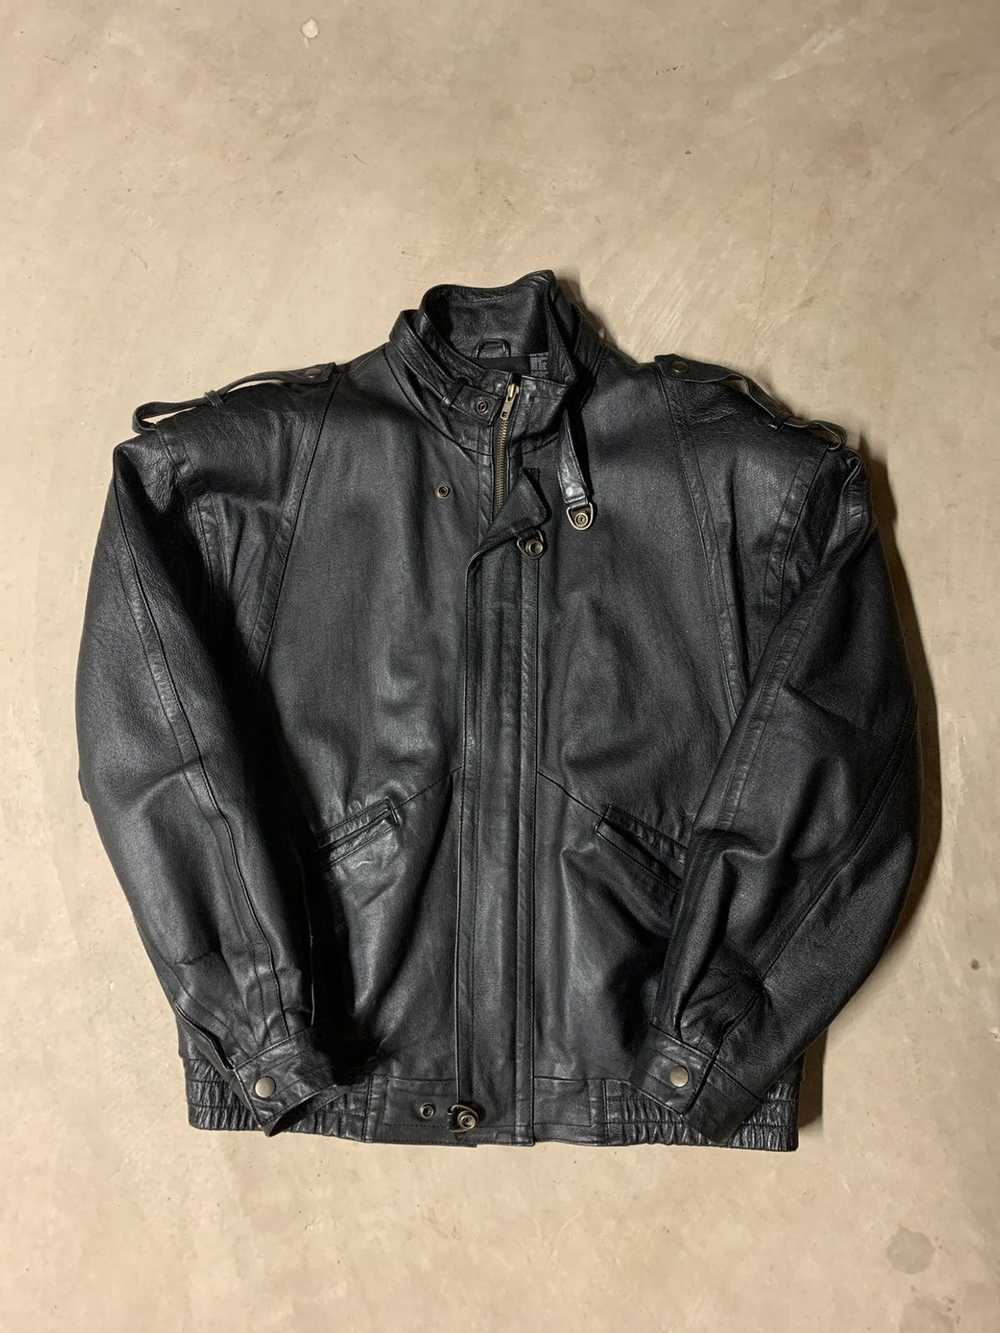 Leather Jacket × Vintage Leather Jacket - image 1